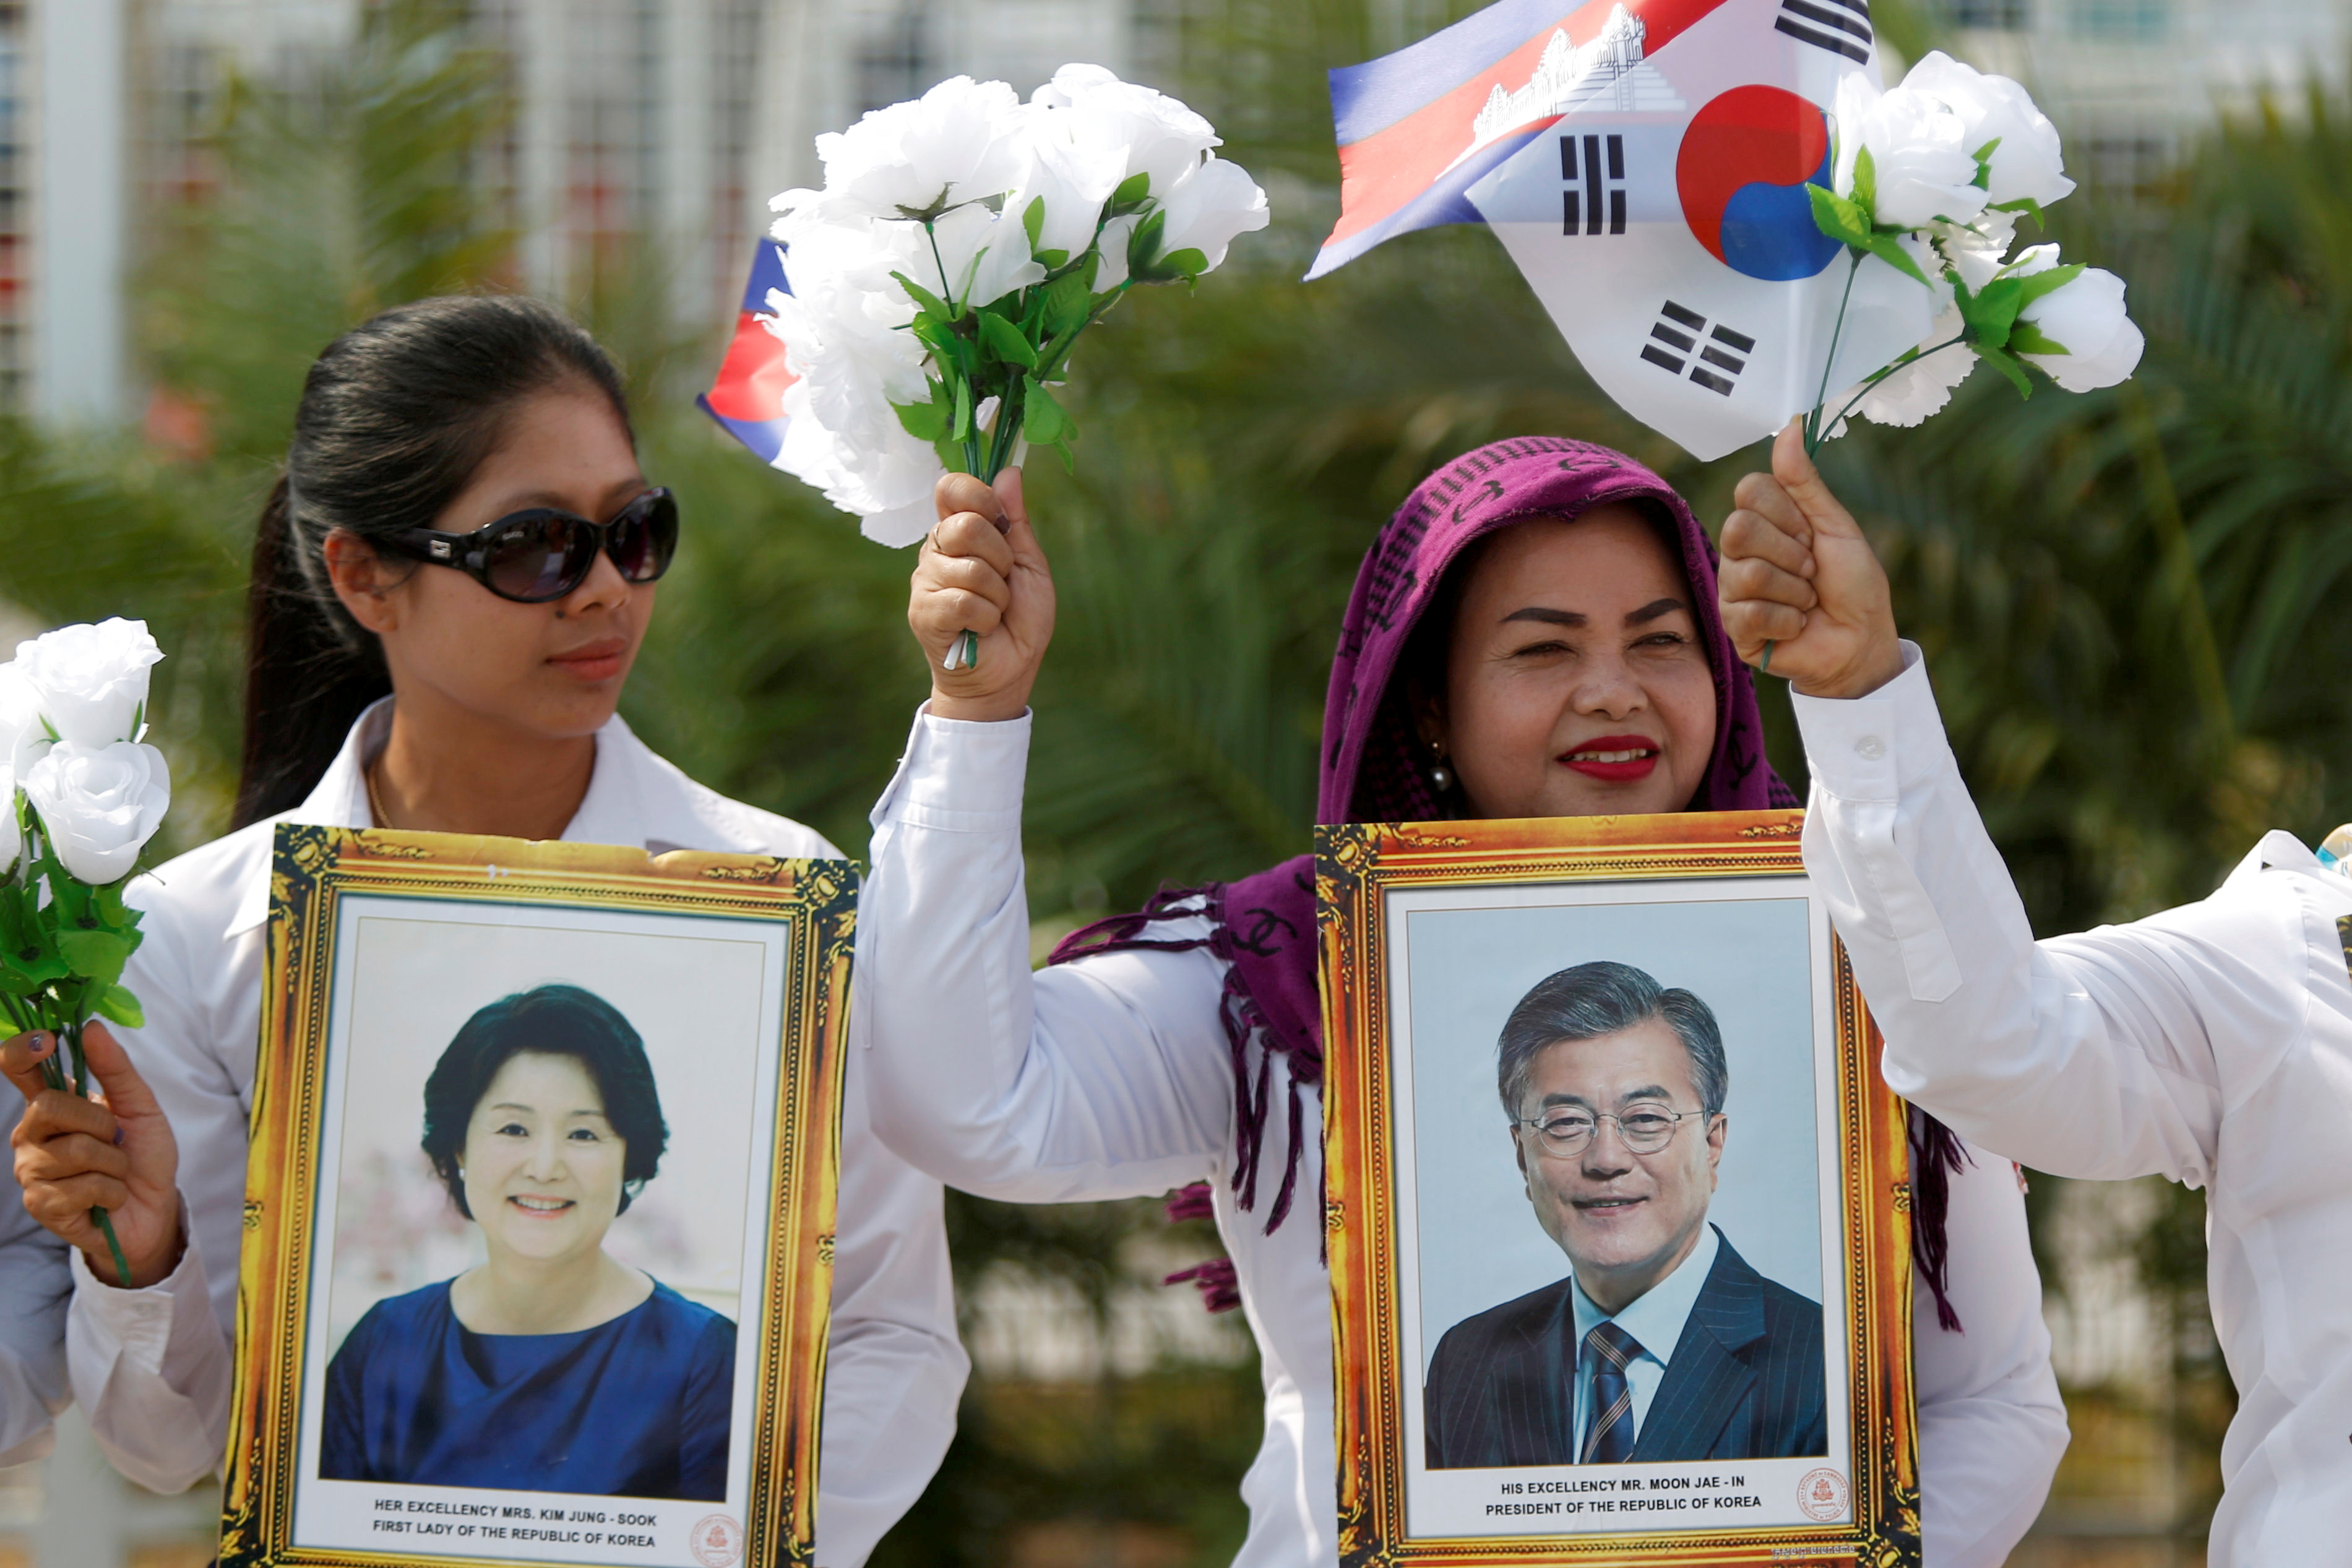 مواطنو كمبوديا يحتشدون لاستقبال رئيس كوريا الجنوبية